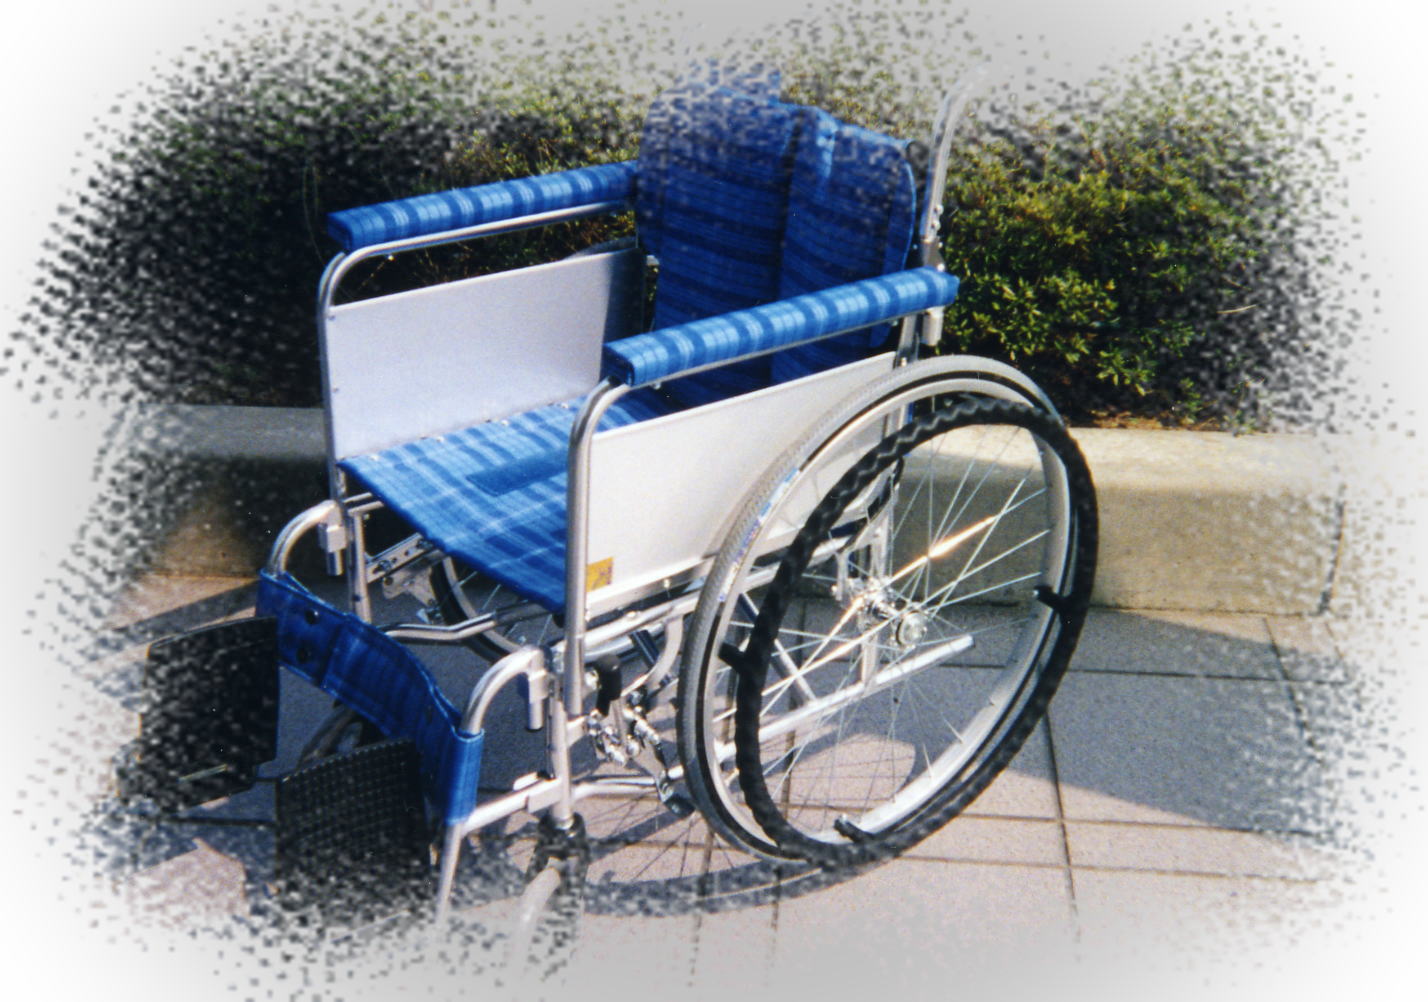  片麻痺用オーダー車椅子